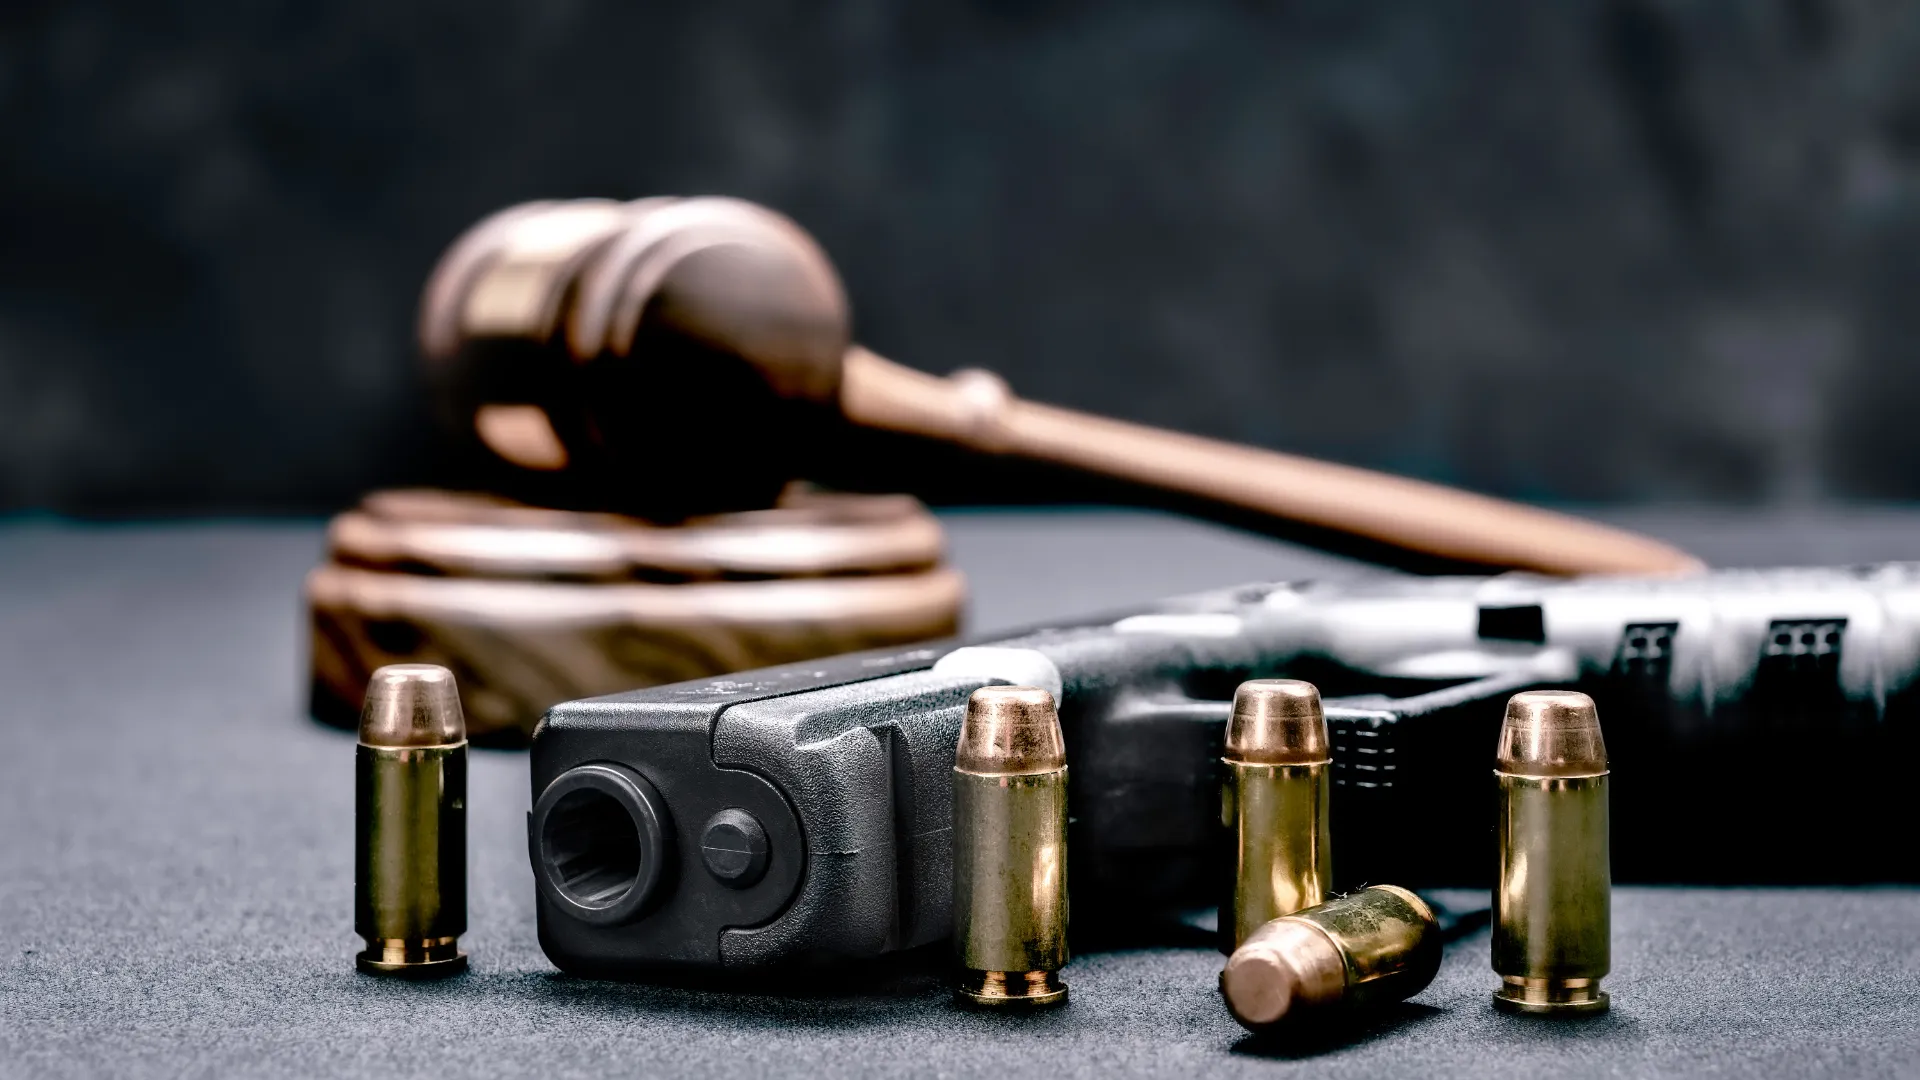 Cost of Restoring Gun Rights